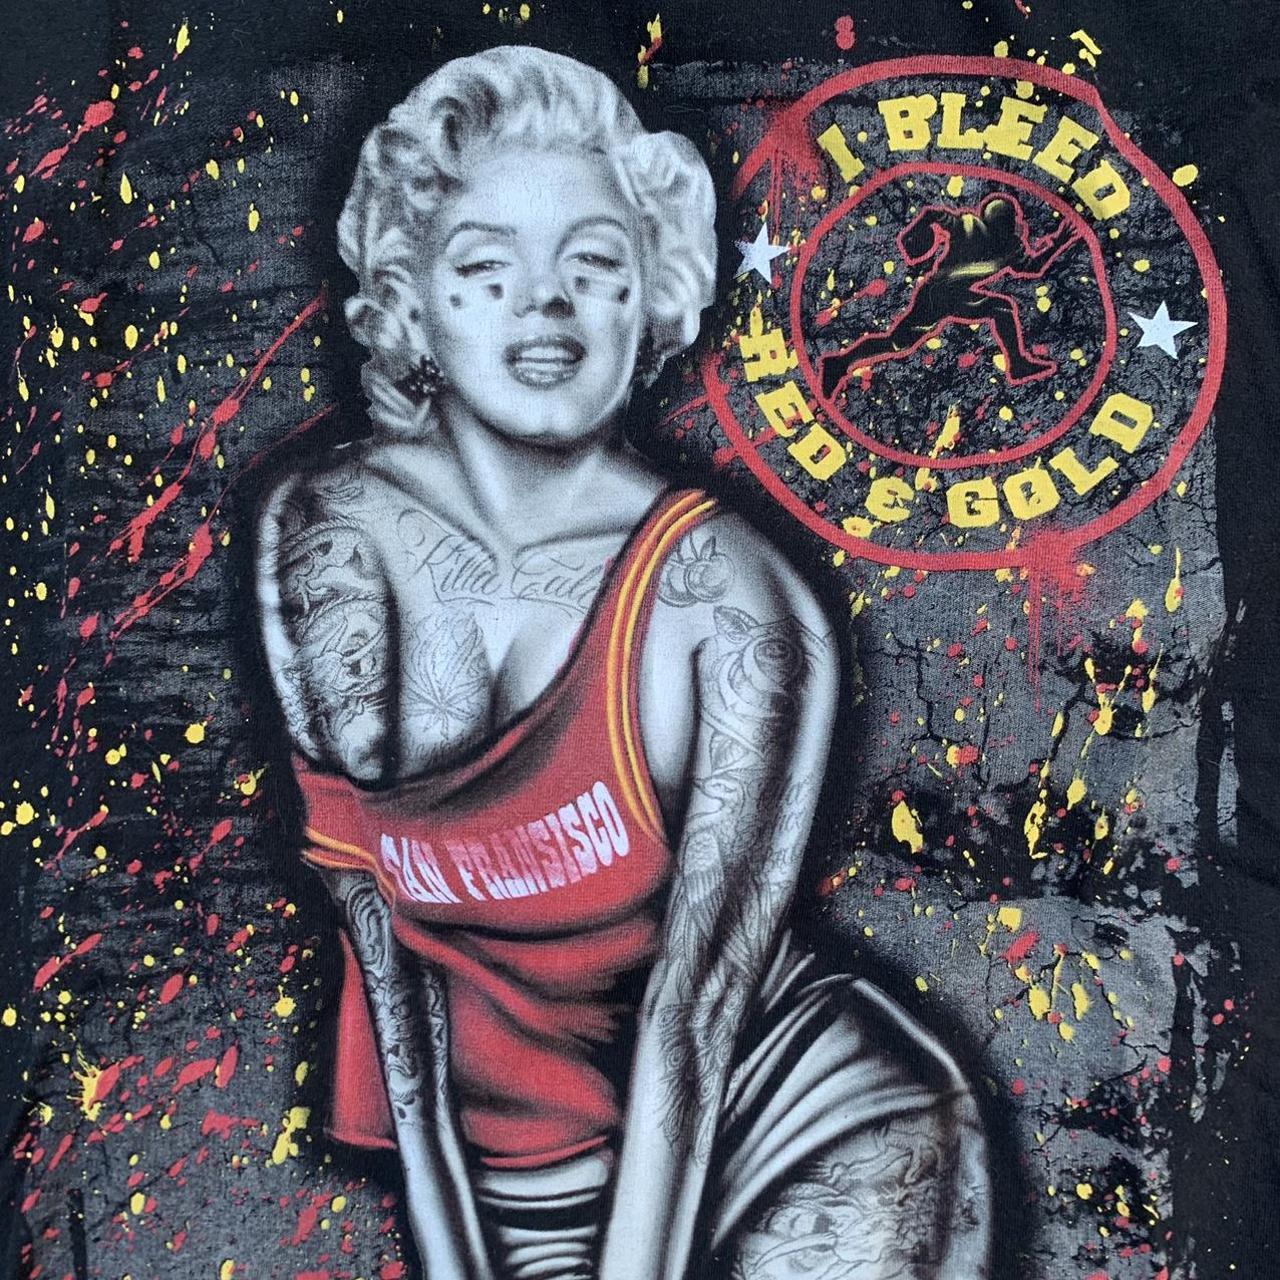 Tatted Marilyn Monroe x SF 49ers tee super - Depop